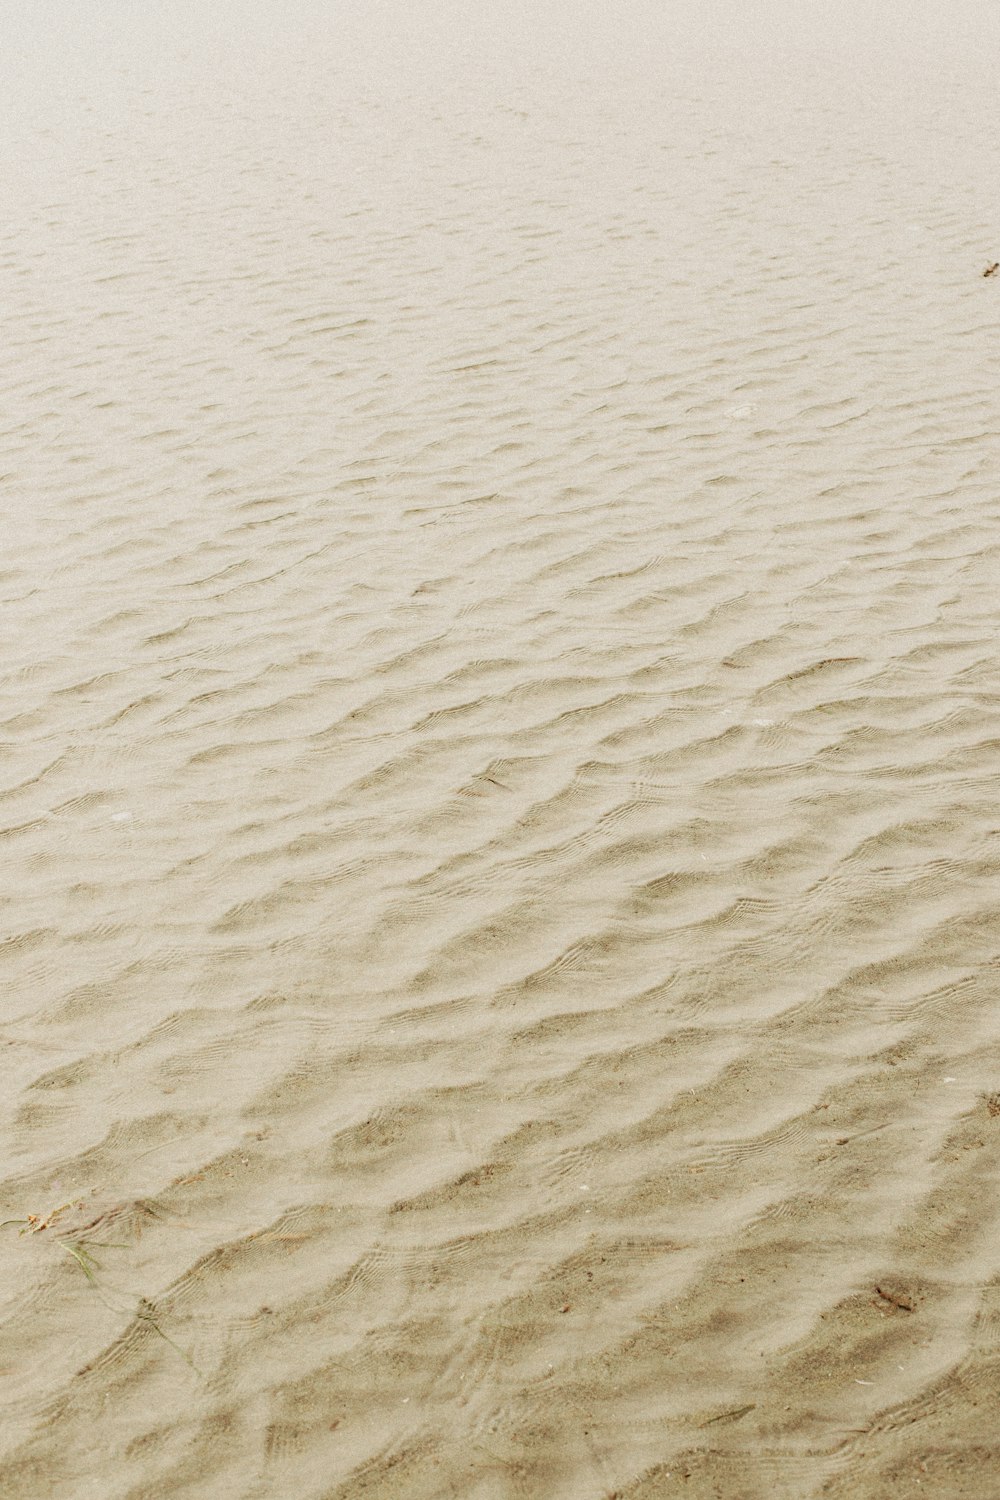 areia marrom com areia branca